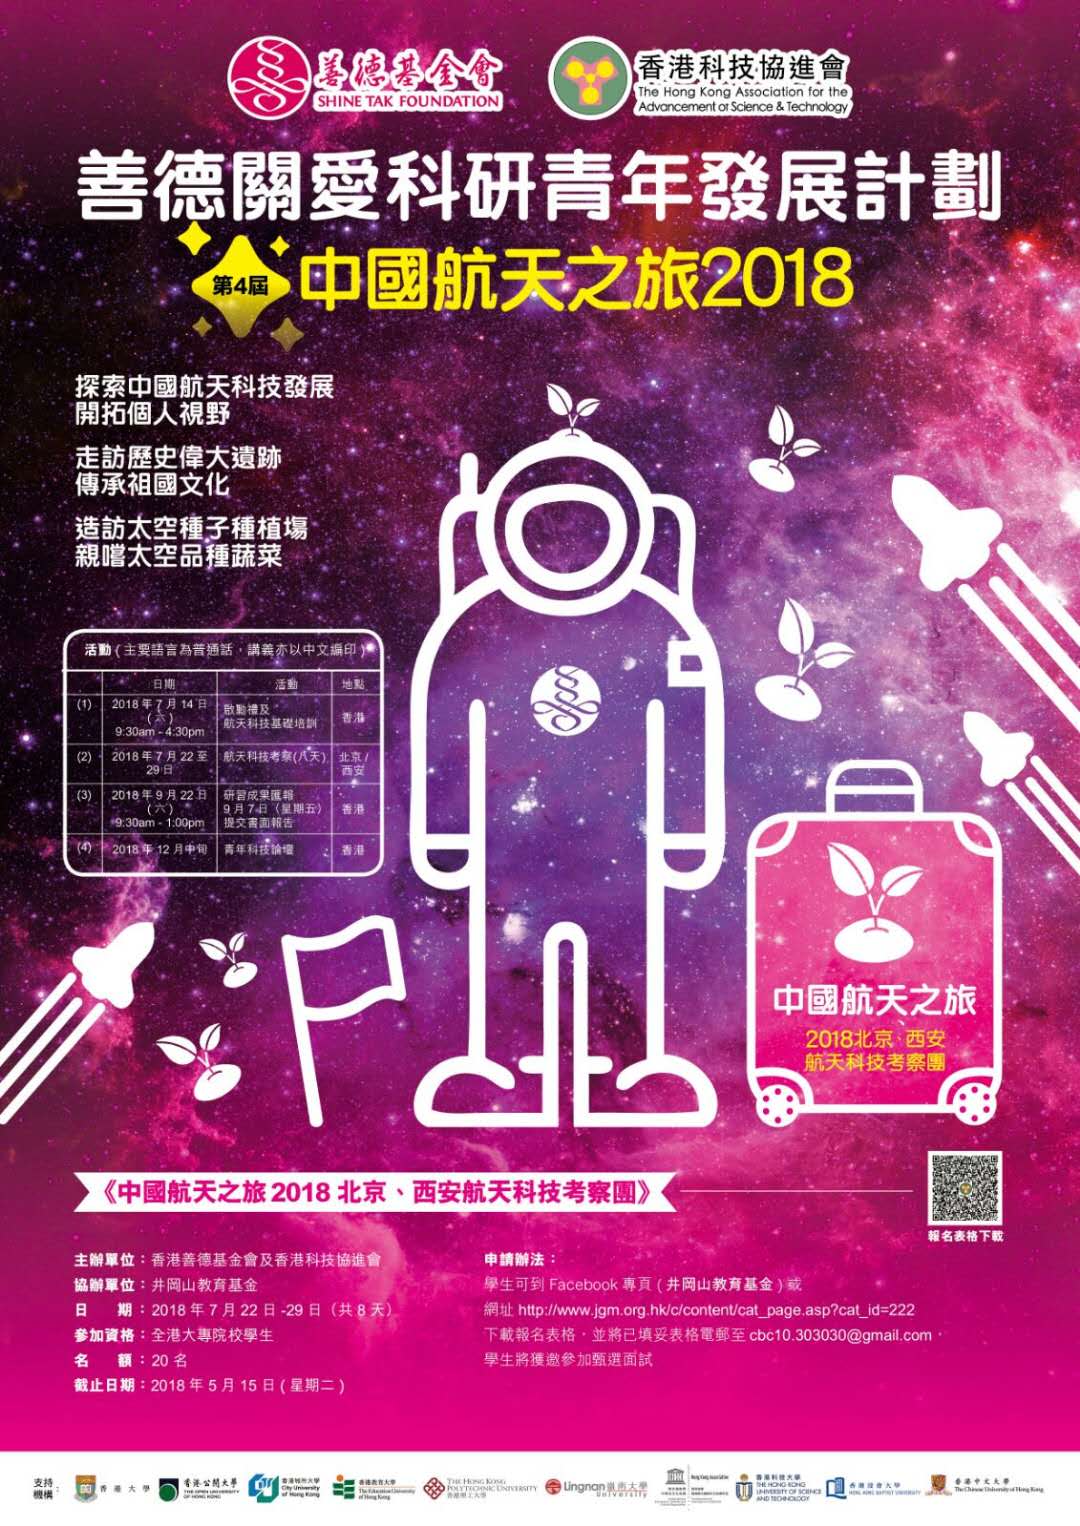 附件 第四屆中國航天之旅2018